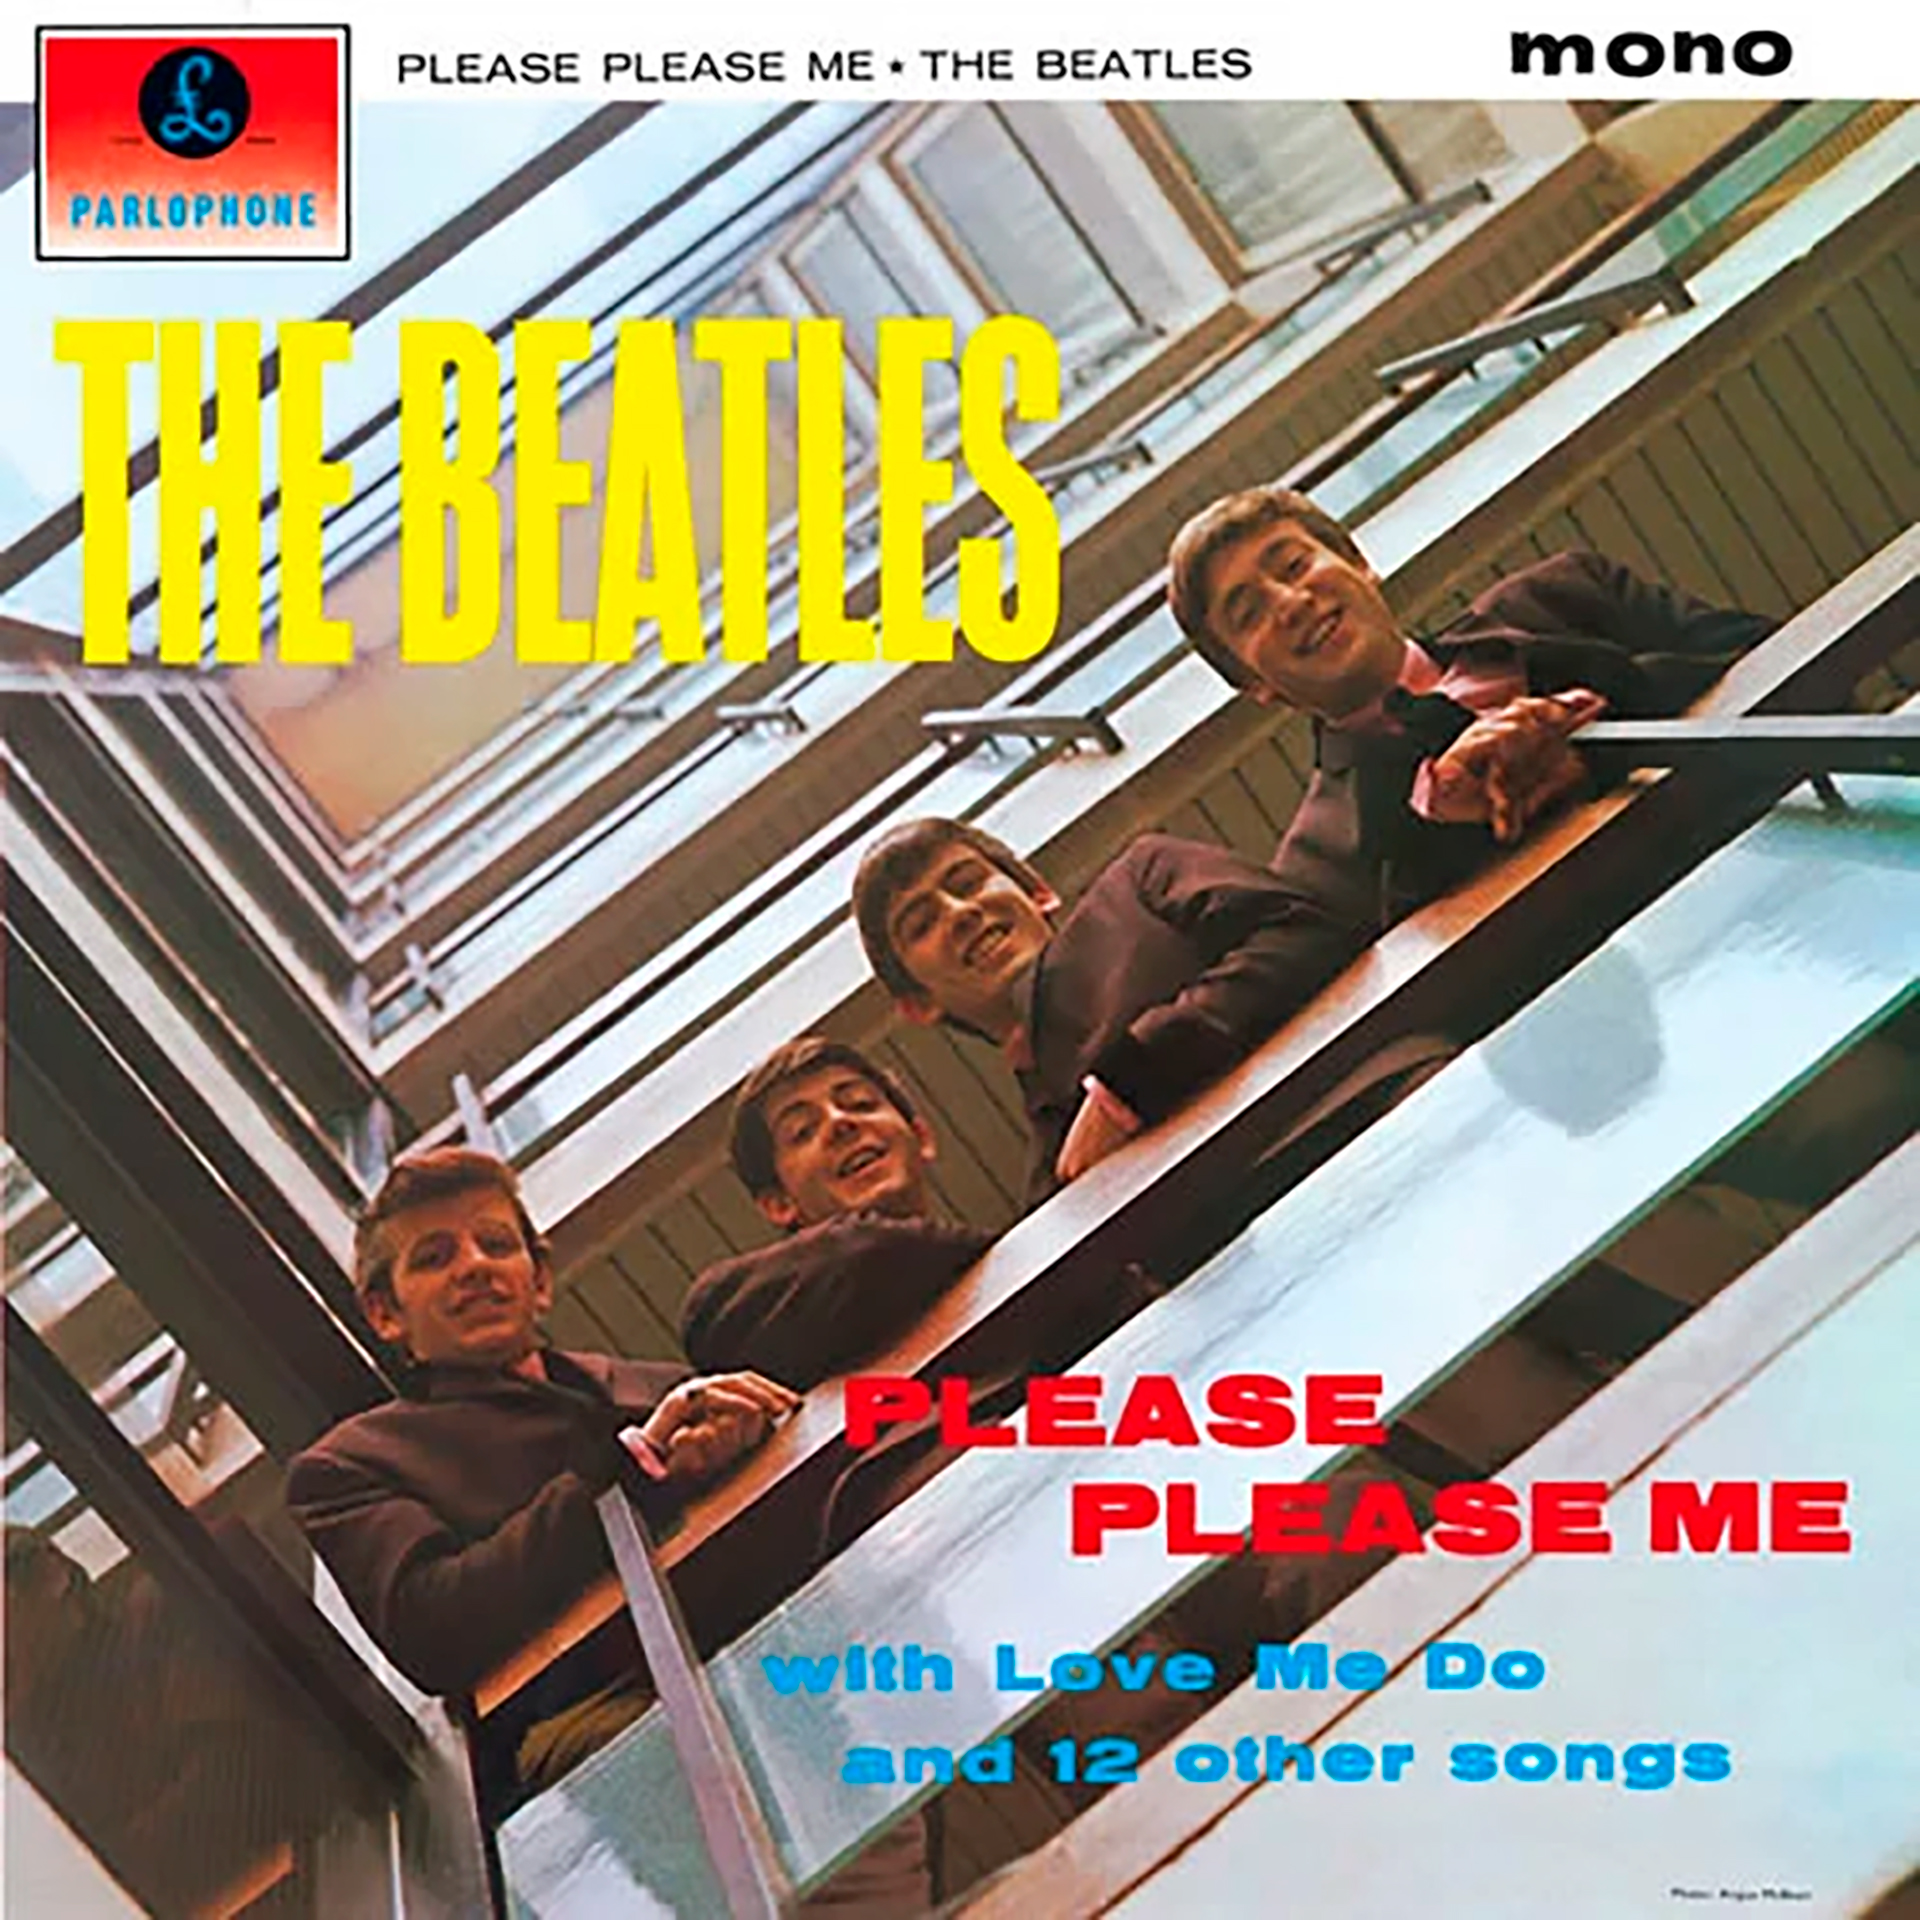 "Please Please Me", el álbum debut de Los Beatles, fue publicado el 22 de marzo de 1963 en el Reino Unido